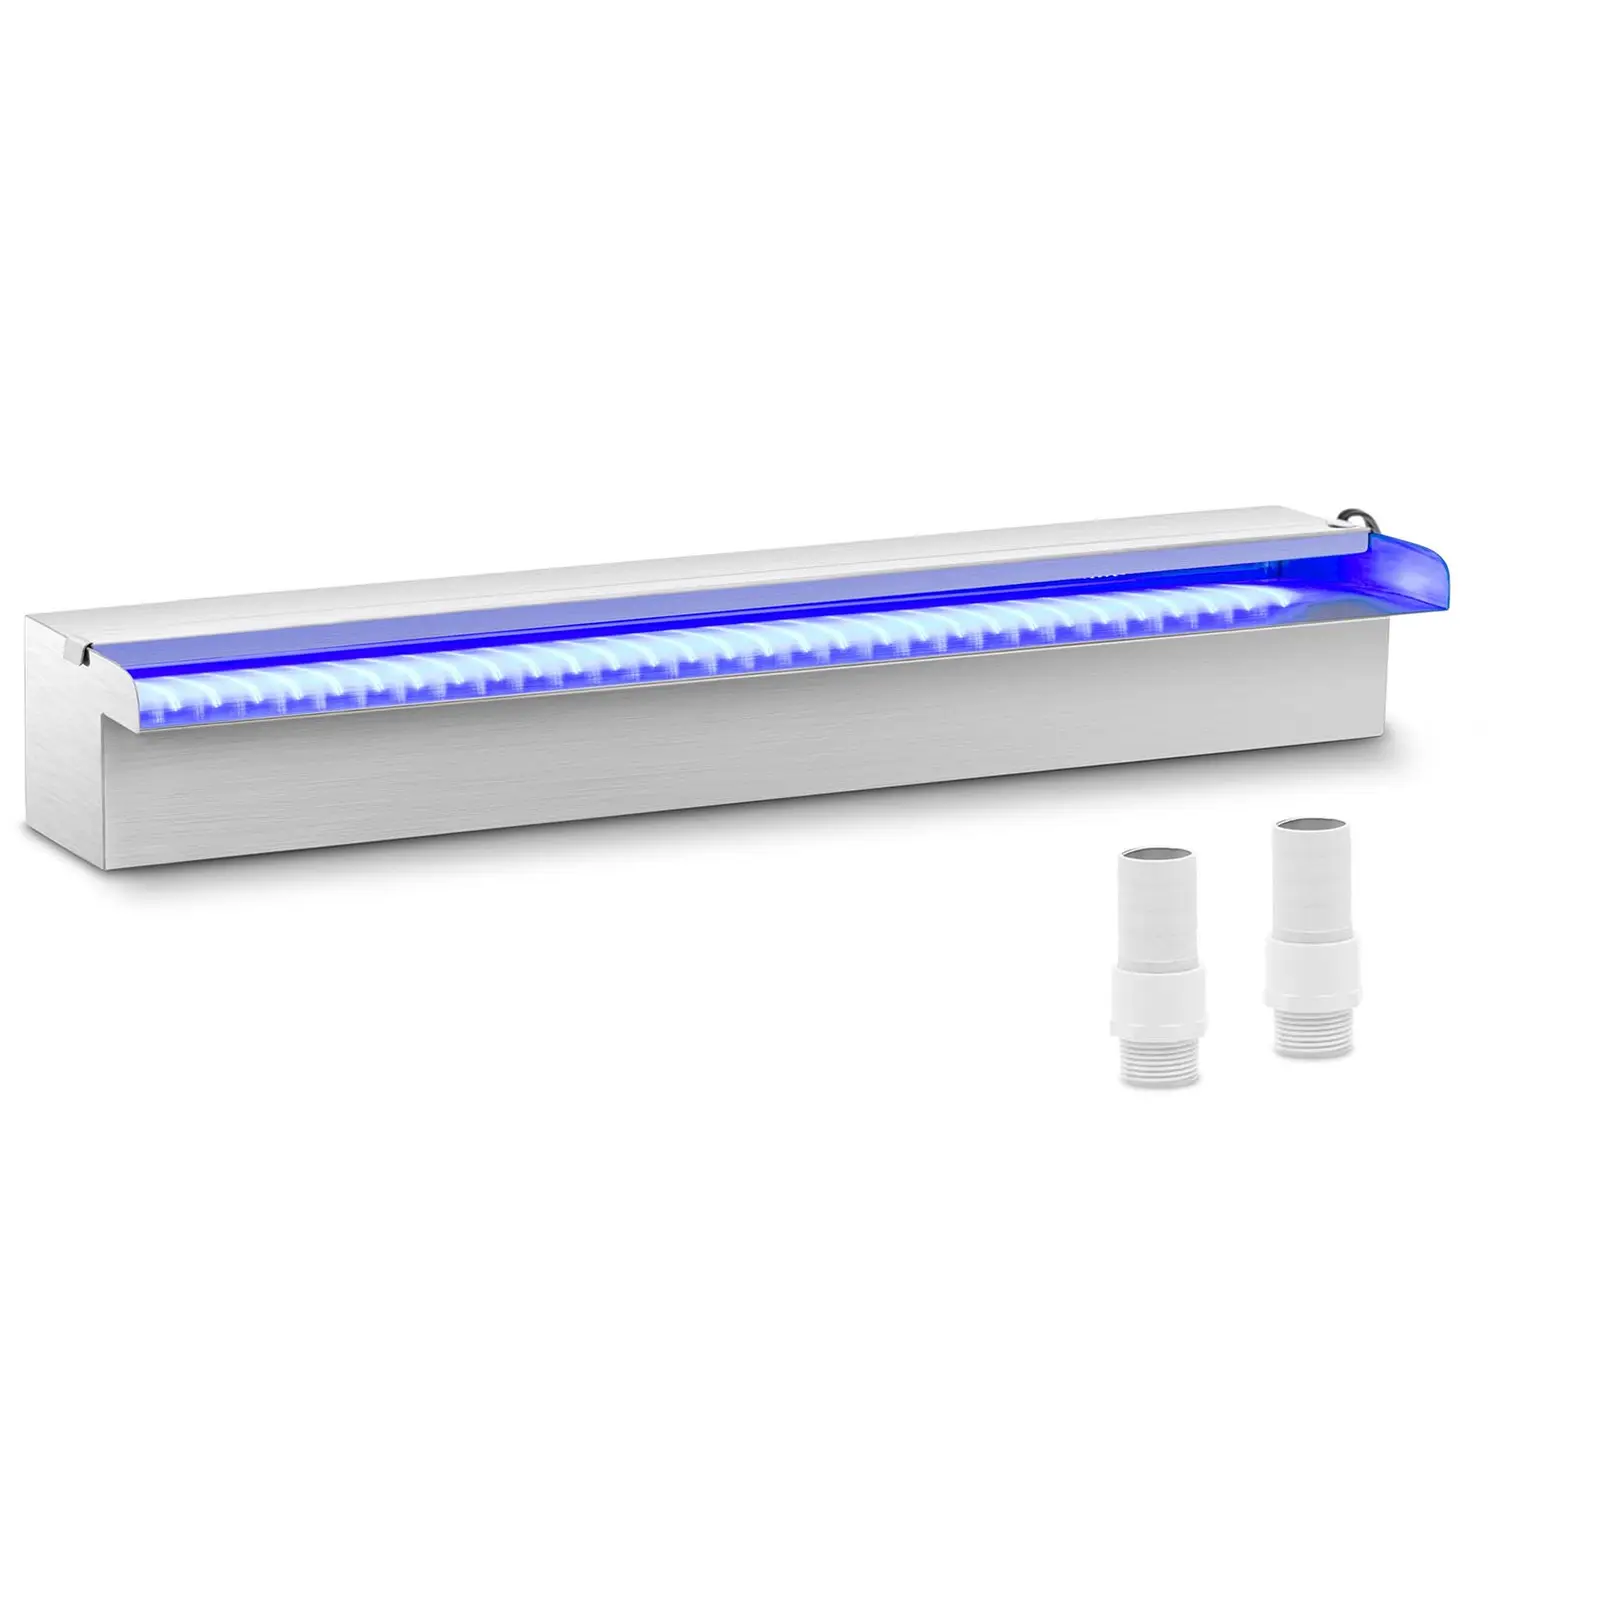 {{marketing_meta_keyword_1}} – 60 cm – LED osvetlenie – modrá/biela – otvorený výtok vody